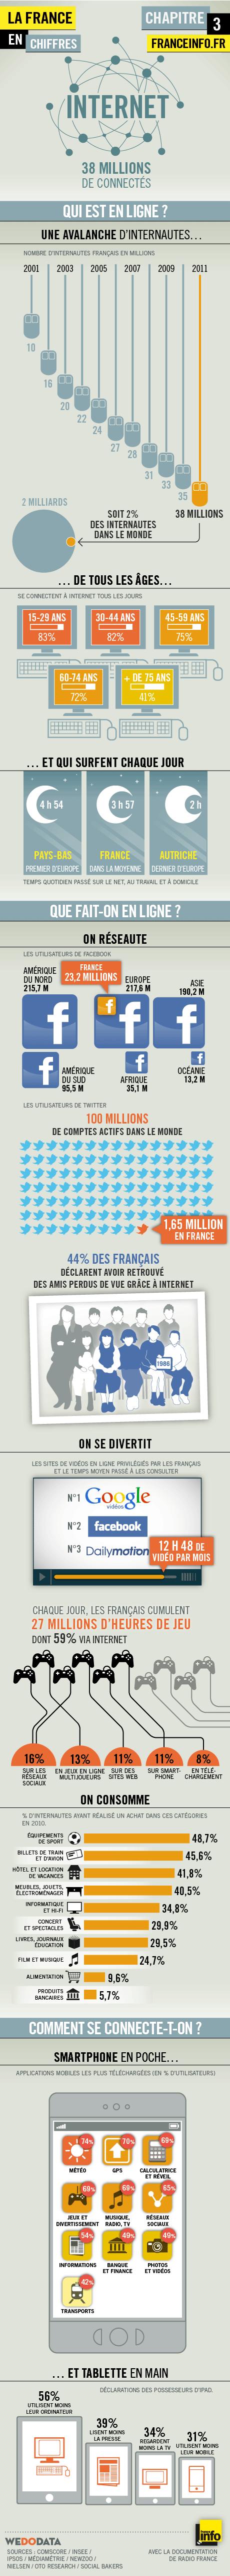 Les chiffres du web français en 2011